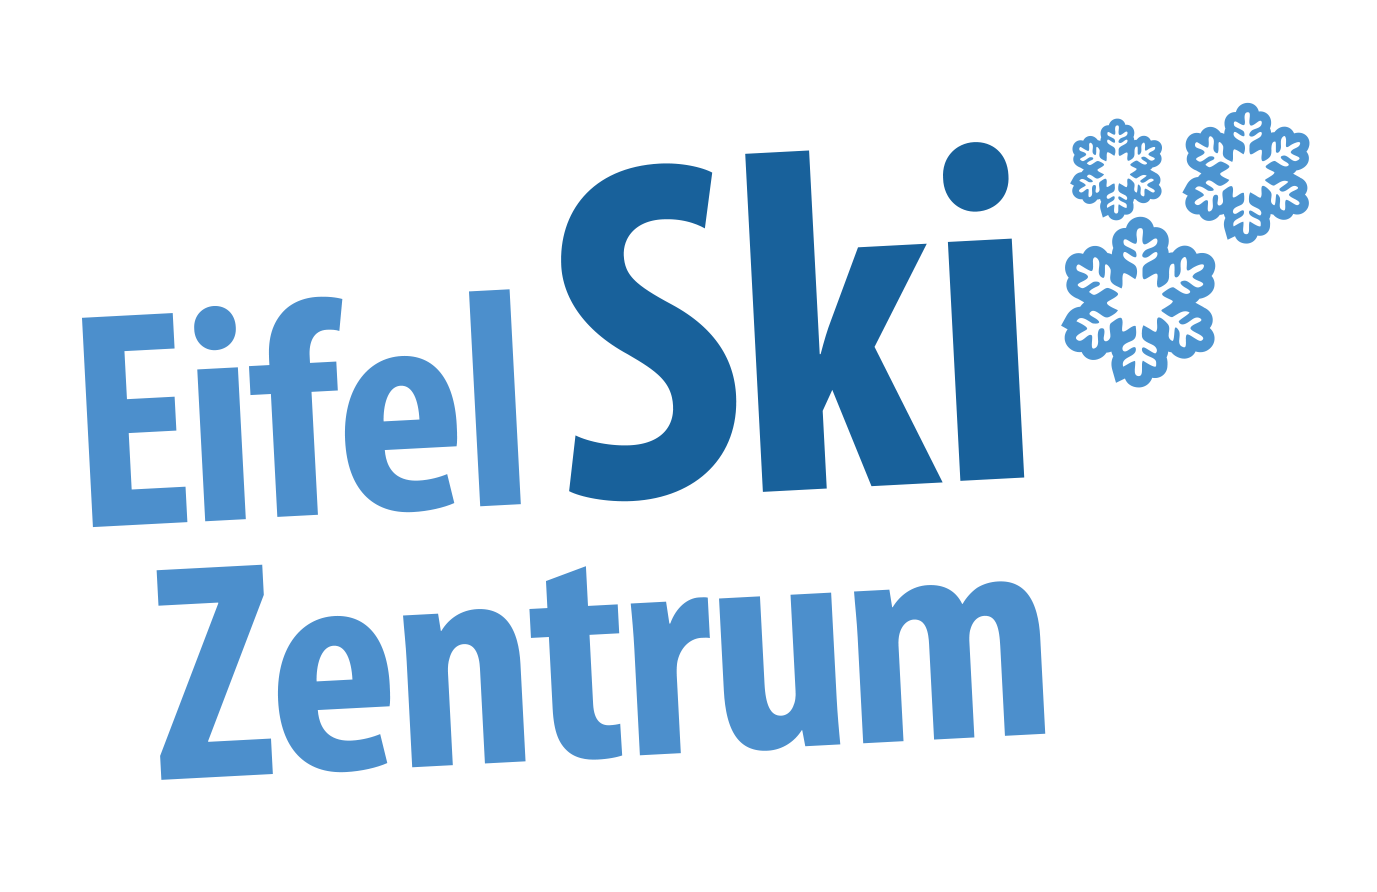 Eifel Ski Zentrum